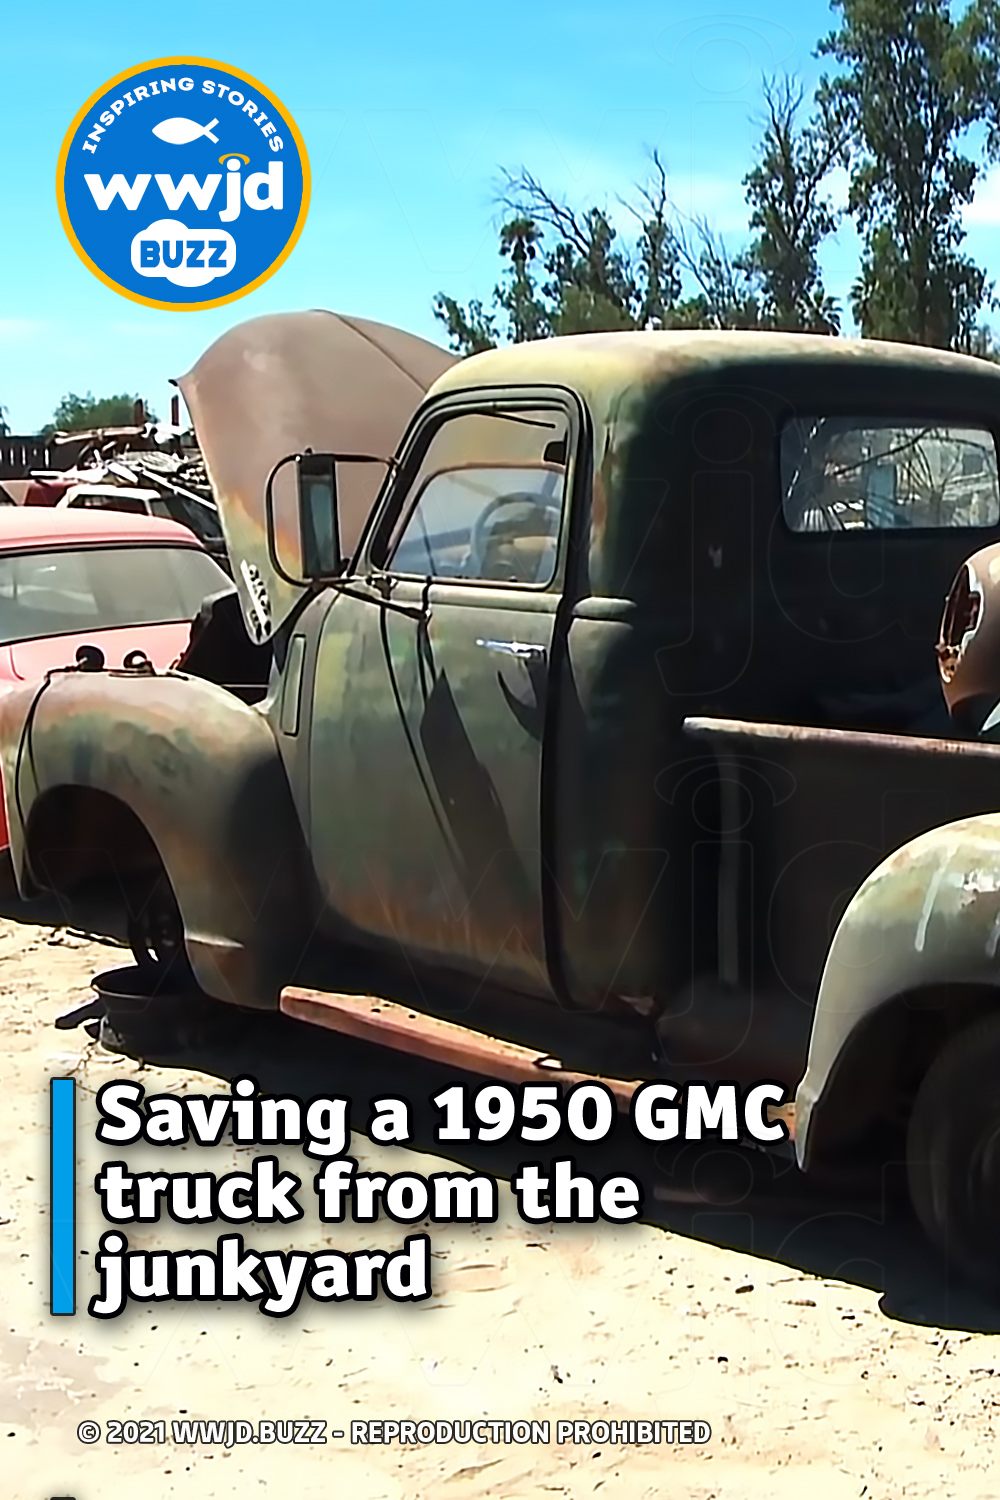 Saving a 1950 GMC truck from the junkyard